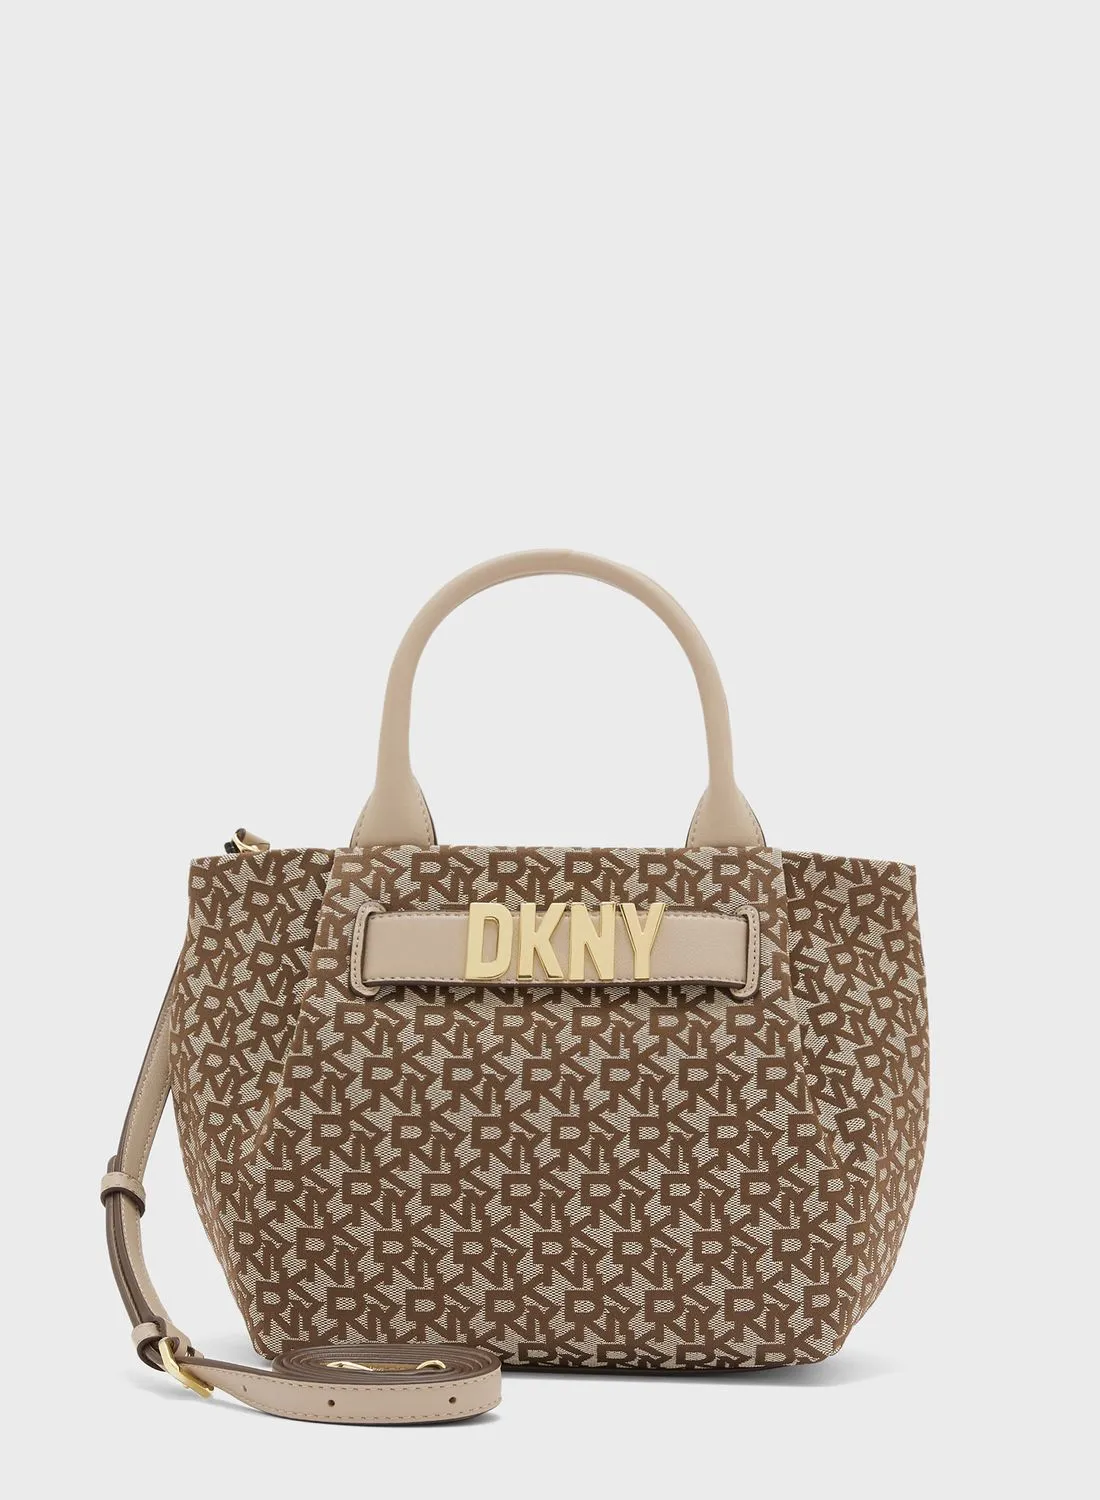 DKNY Pilar Top Handle Satchels Bags